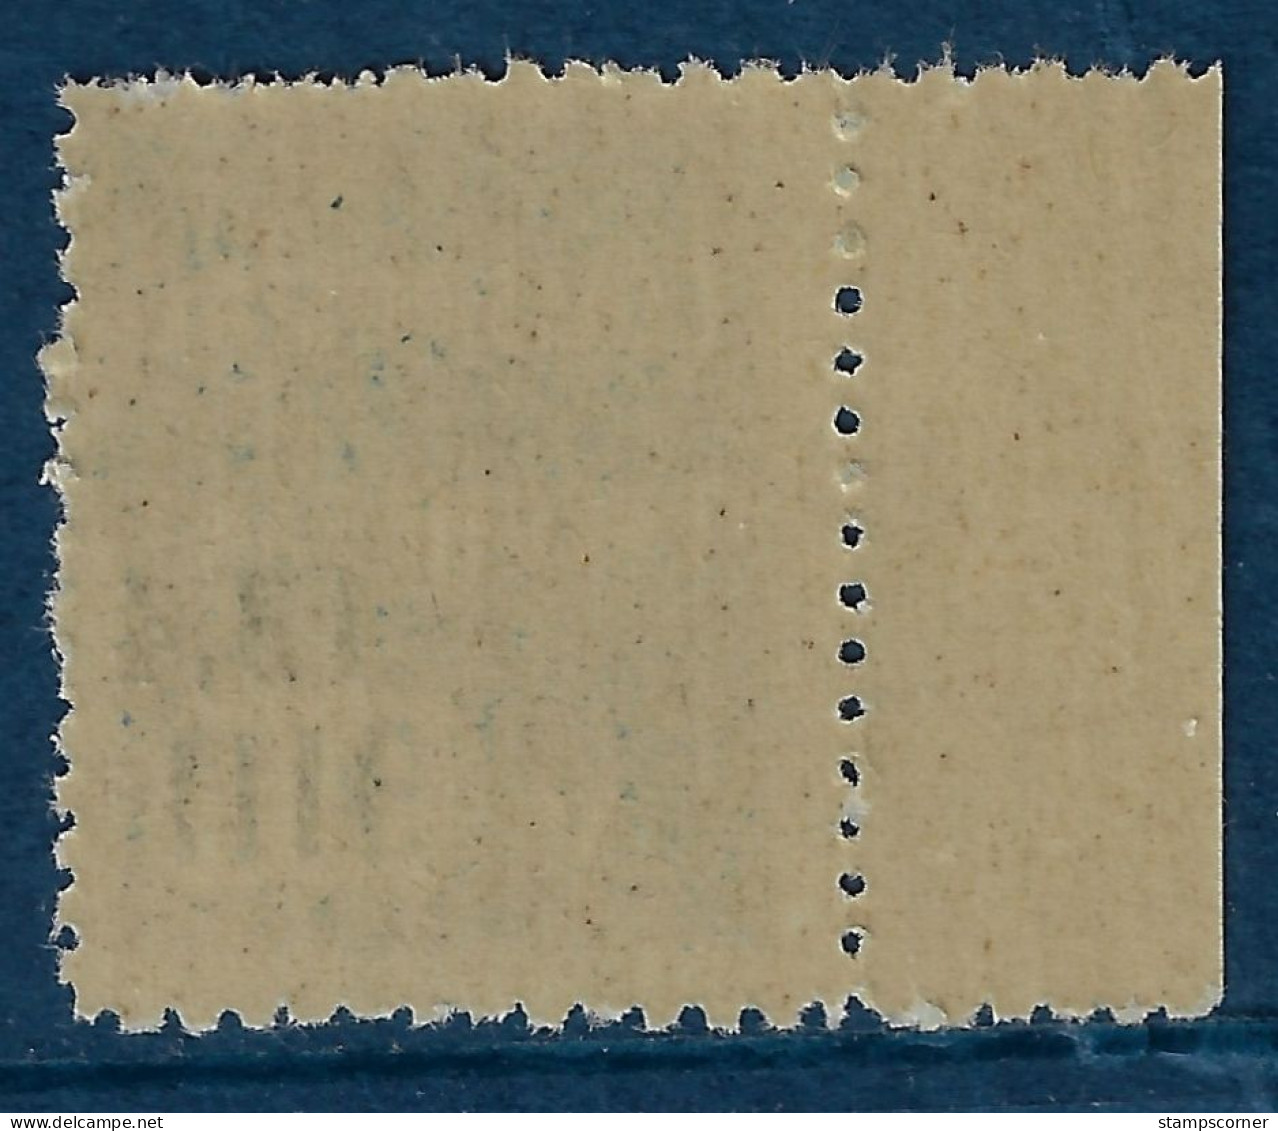 Colis Postal 148a ** Neuf Sans Charnière (scan Recto / Verso) - Paketmarken